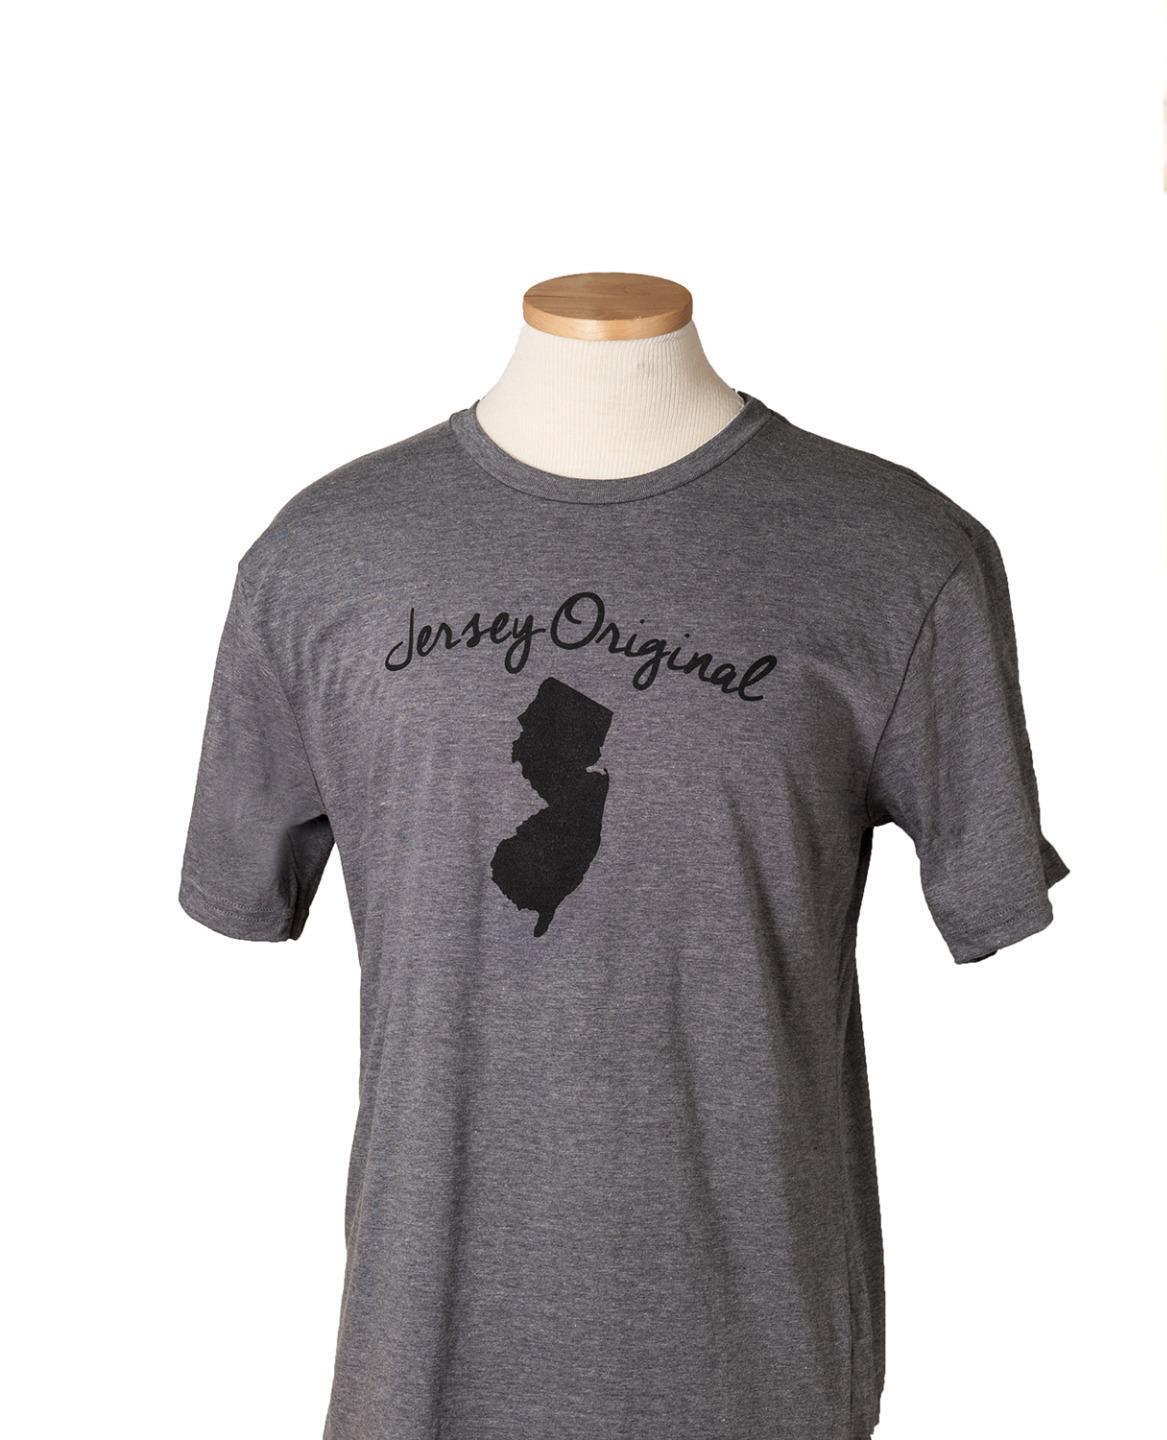 New Jersey Original NJ Garden State Outline USA Made Street OPS T-Shirt Gray